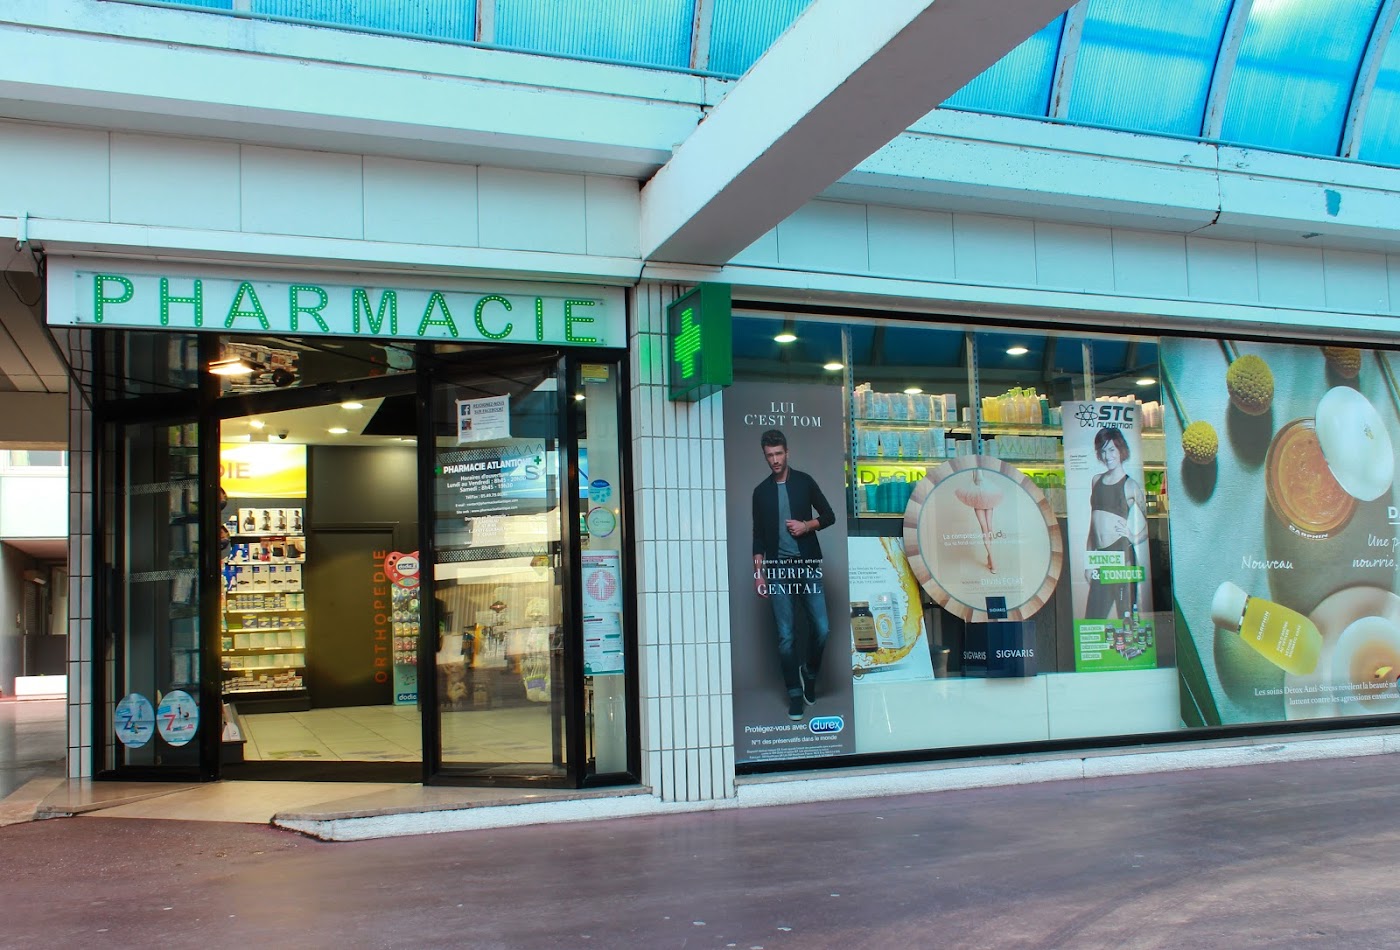 Pharmacie Atlantique